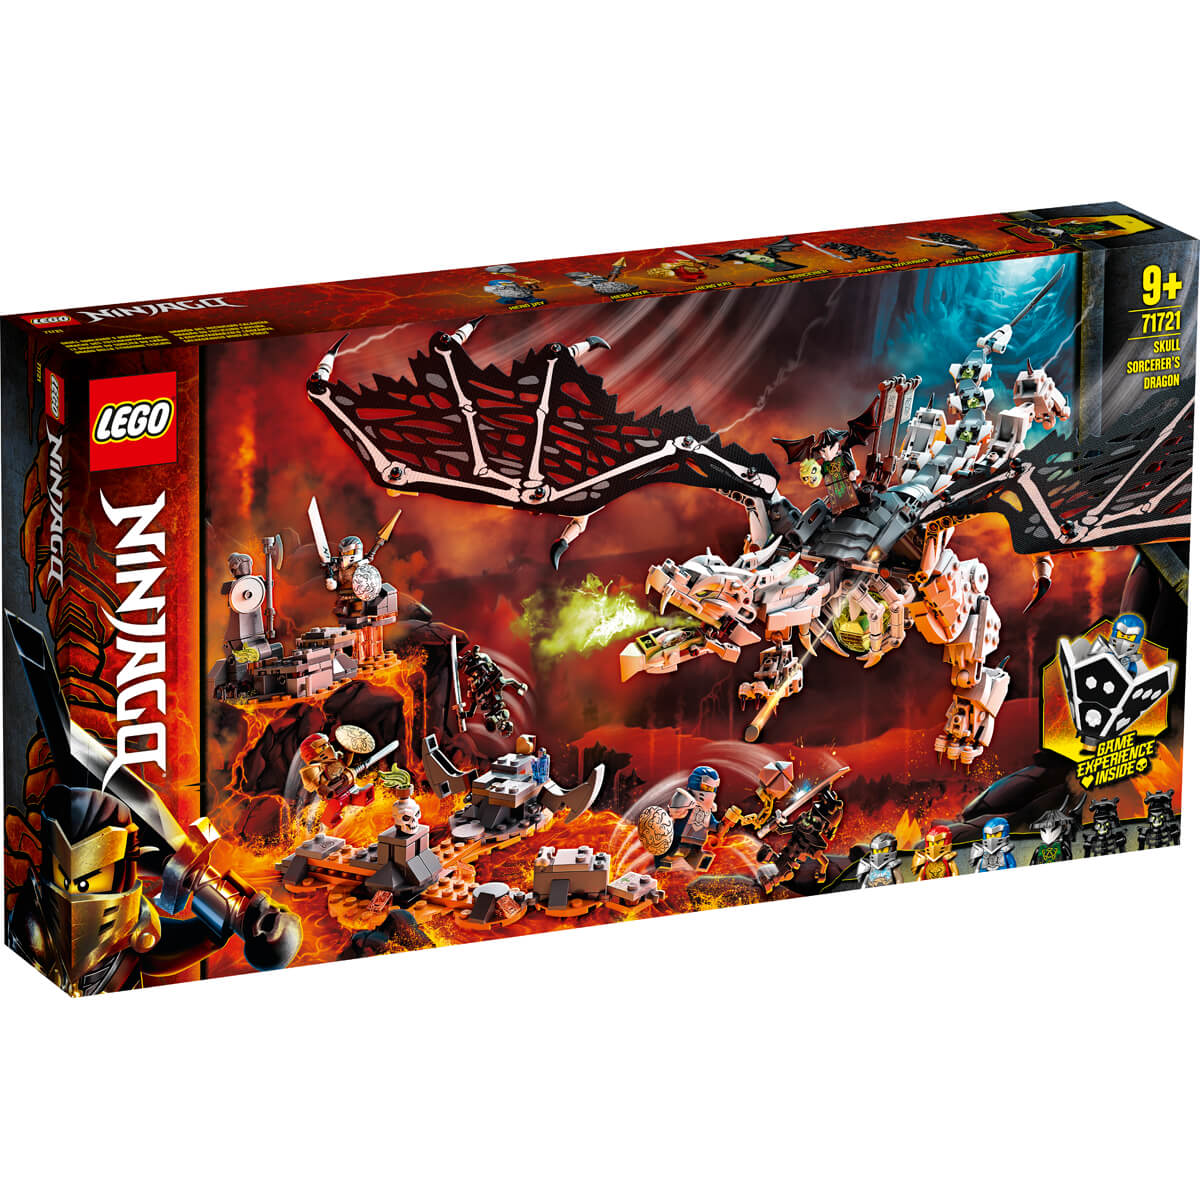 ΠΑΙΔΙ | Παιχνίδια | LEGO | NINJAGO 71721 Skull Sorcerer'S Dragon